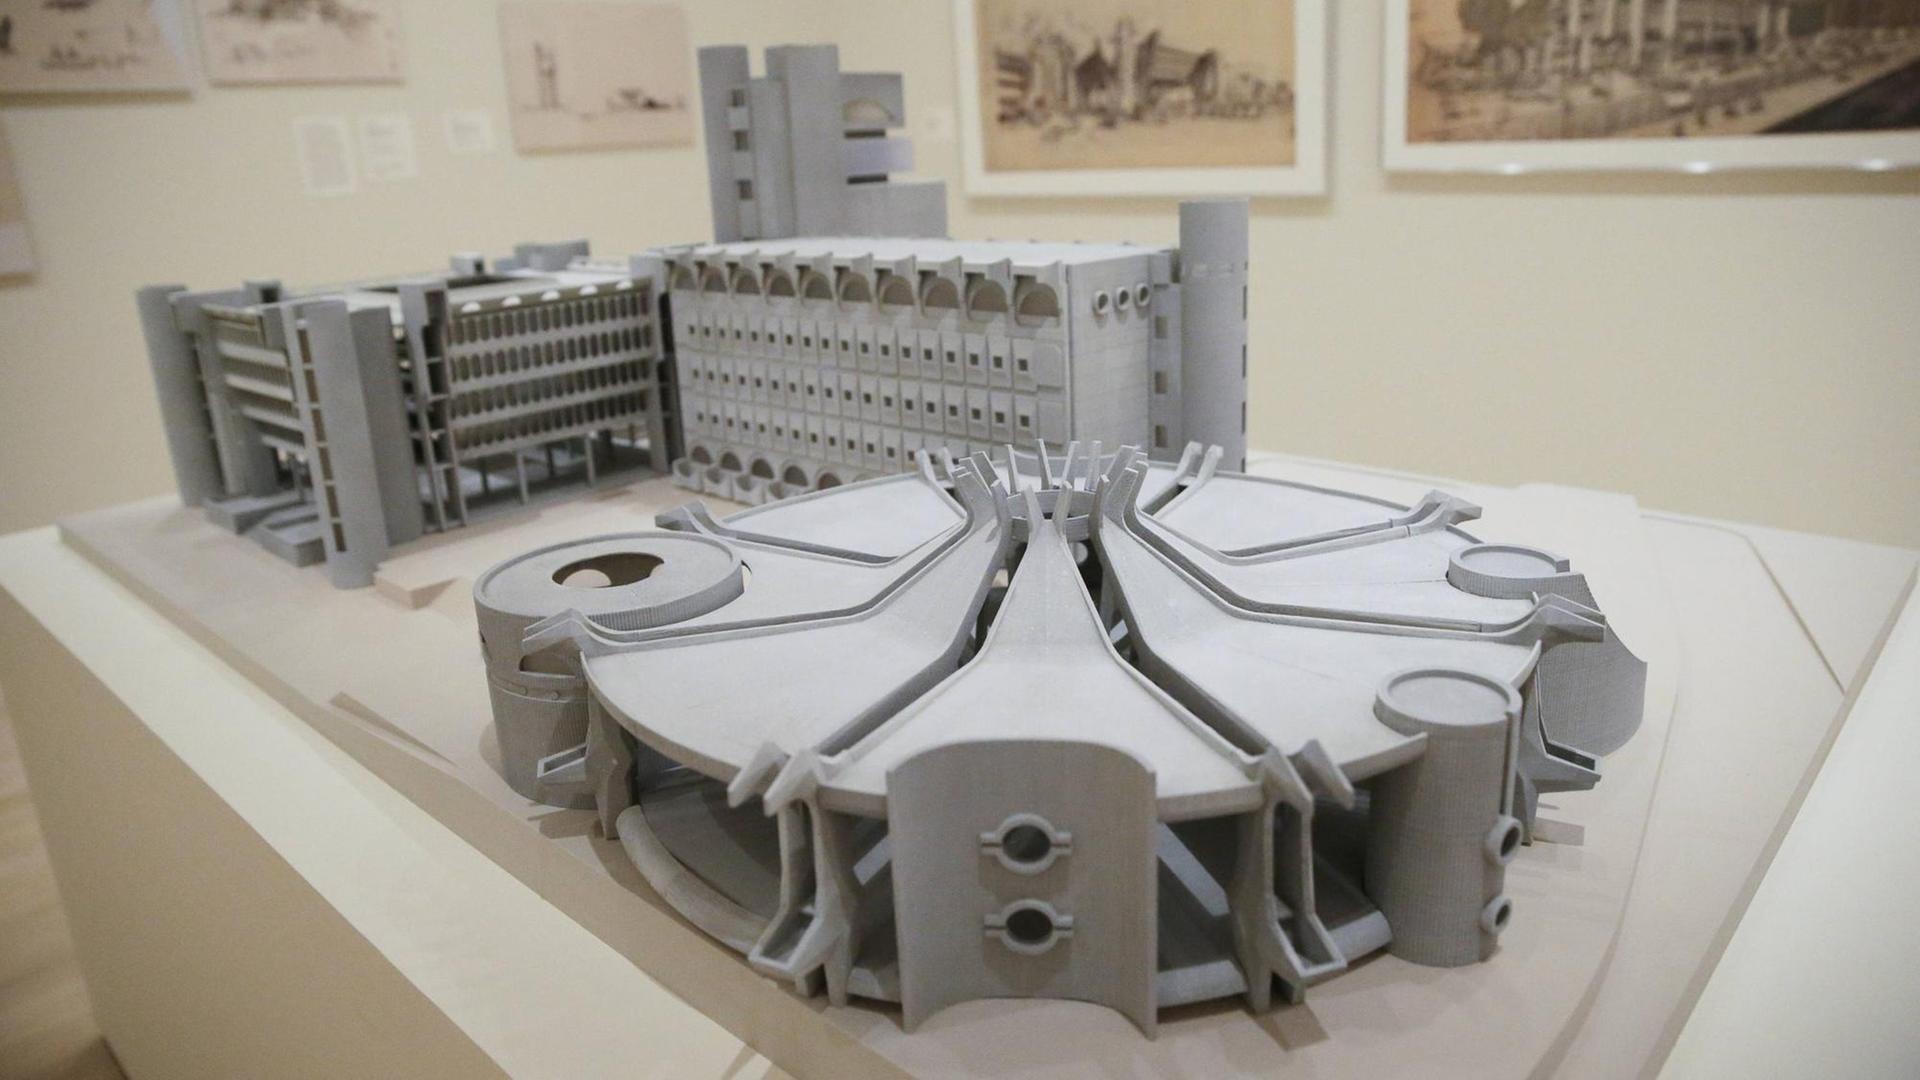 Ein Architekturmodell in der Ausstellung "Toward a Concrete Utopia: Architecture in Yugoslavia, 1948-1980" im Museum of Modern Art, New York.